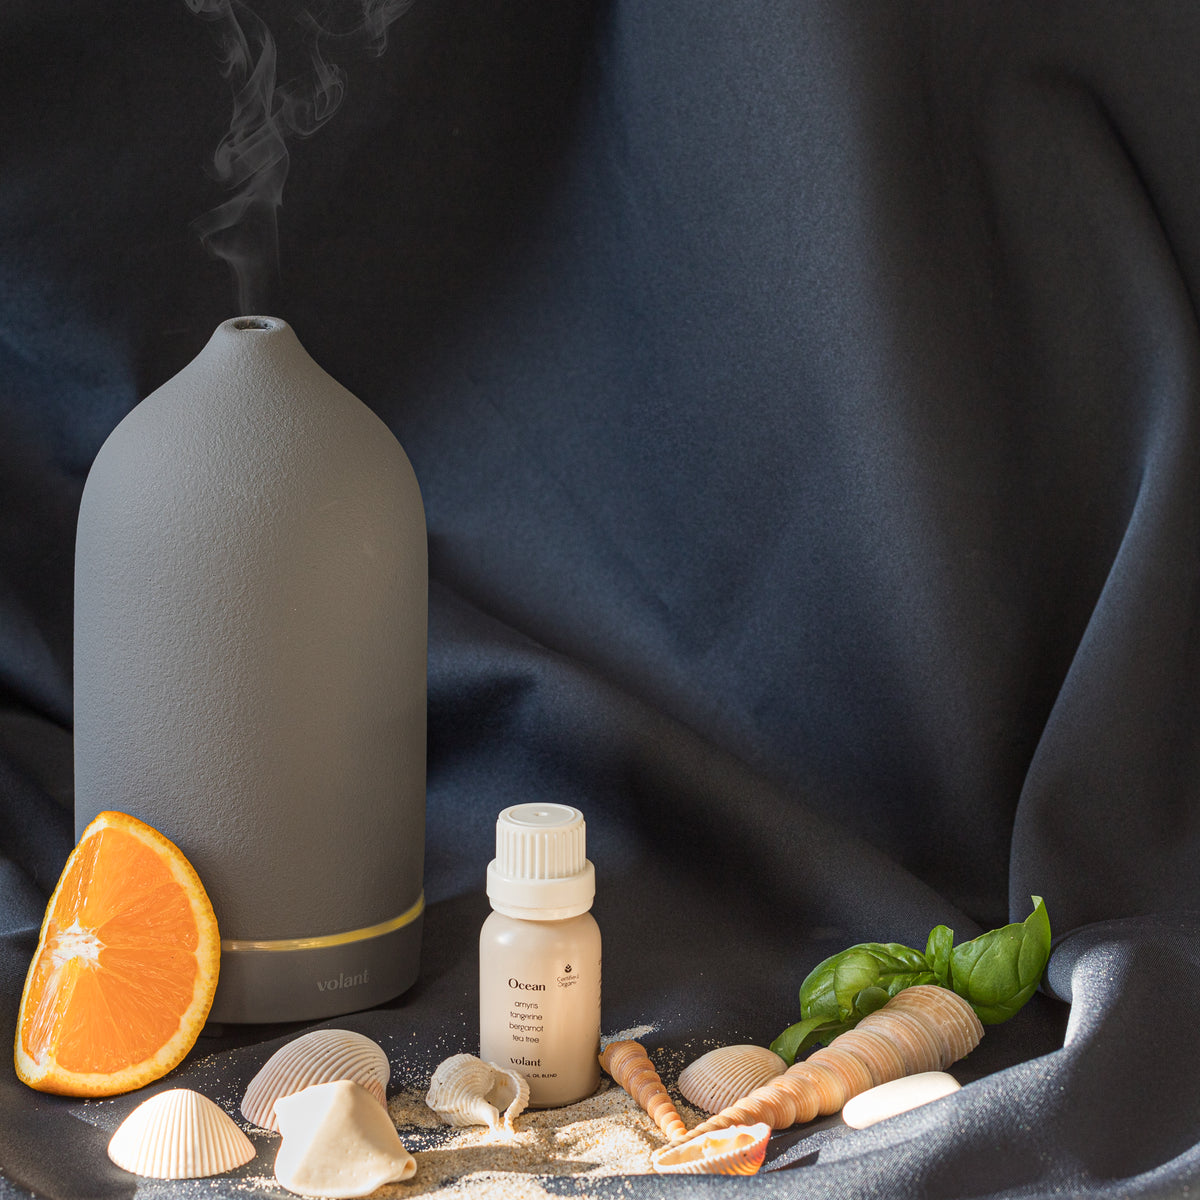 volant grey diffuser med en blanding af æteriske olier fra havet fremstillet af ren amyris, mandarin, tea tree og bergamot